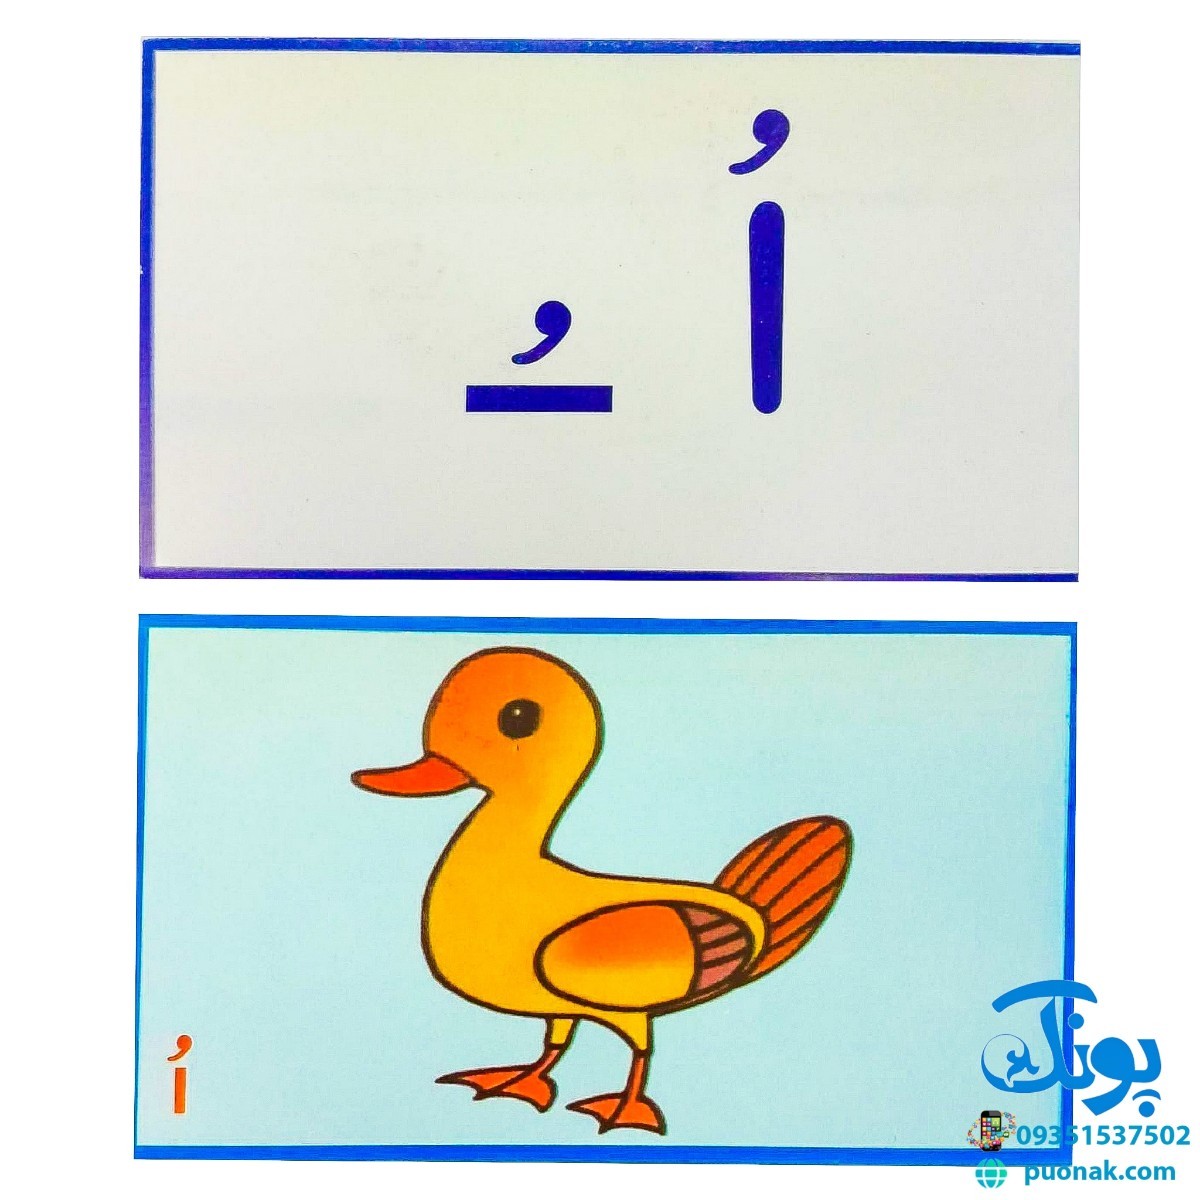 بازی با حروف الفبای فارسی ۲ تصویری (۳۷ کارت تصویری الفبای فارسی پشت و رو)